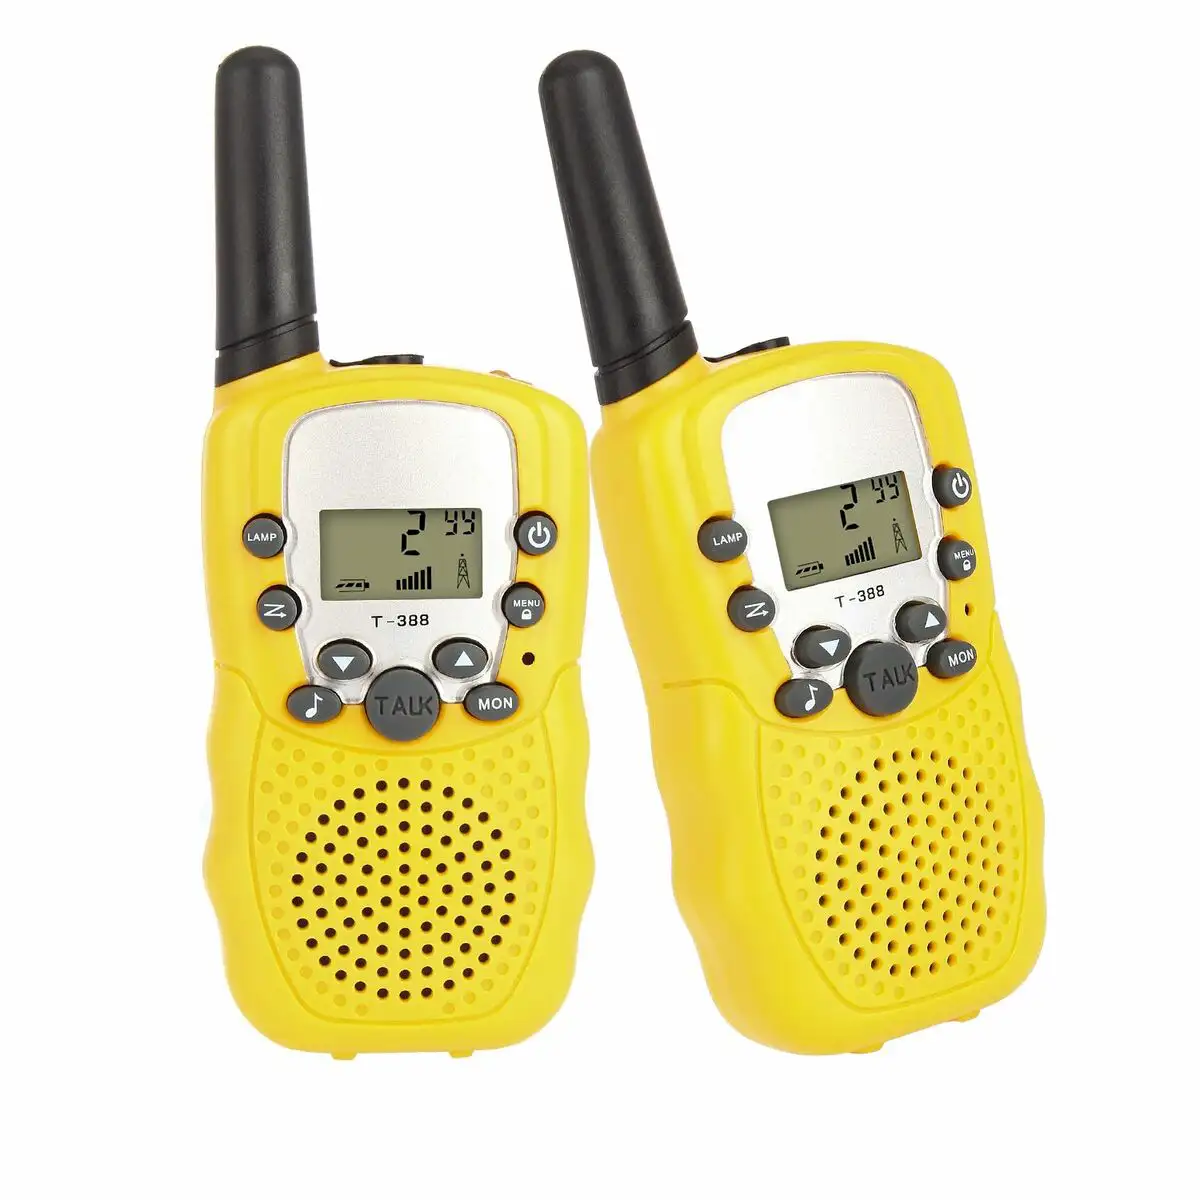 Talkie walkie jaune reconditionne a _6907. DIAYTAR SENEGAL - Là où Chaque Clic Compte. Parcourez notre boutique en ligne et laissez-vous guider vers des trouvailles uniques qui enrichiront votre quotidien.